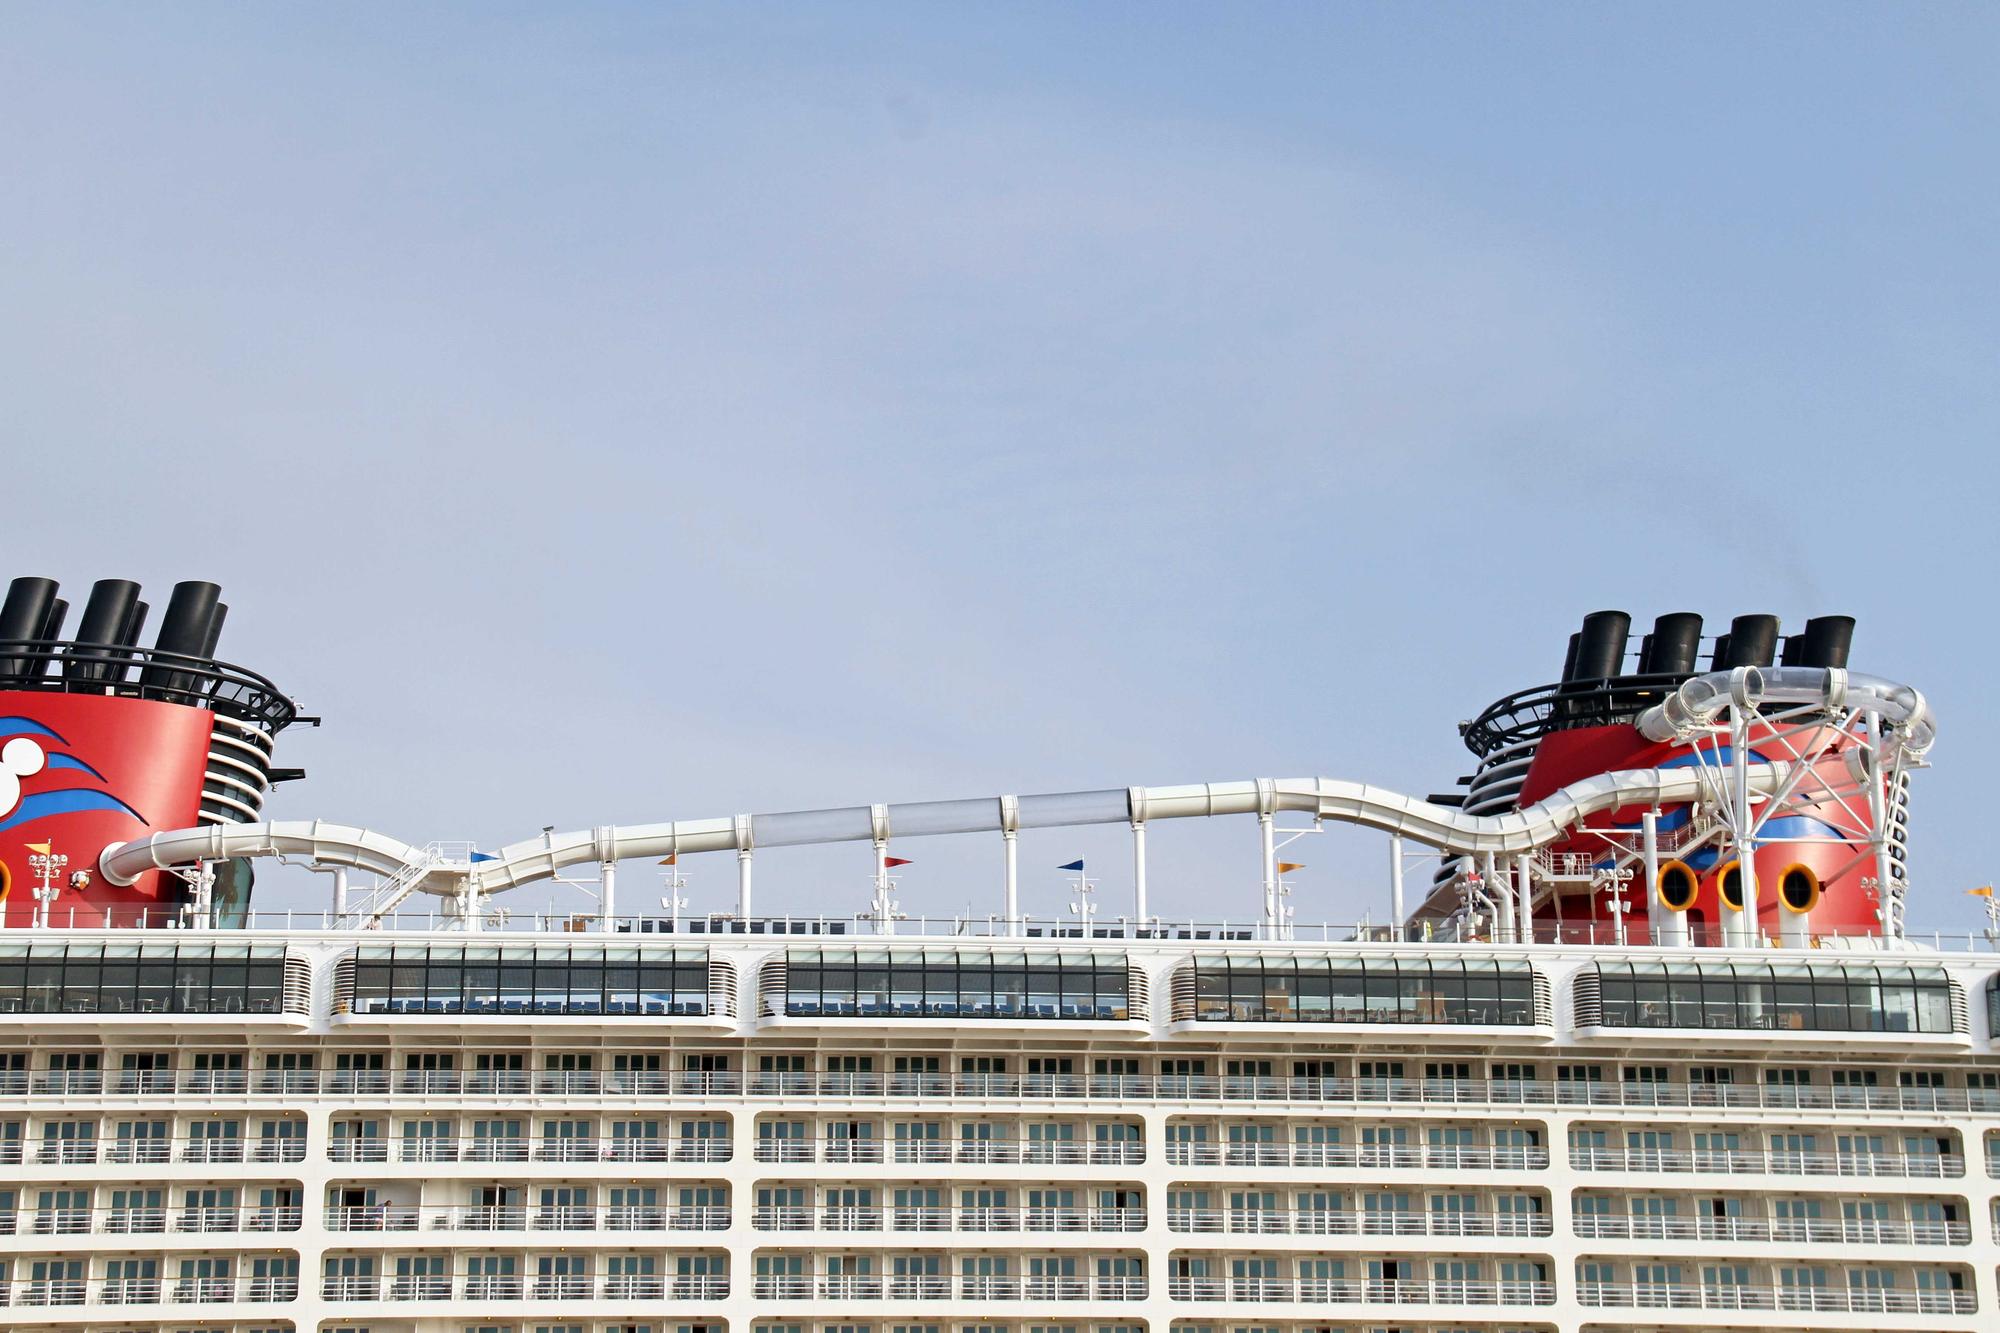 'Disney Dream': un crucero de Disney llega a Palma